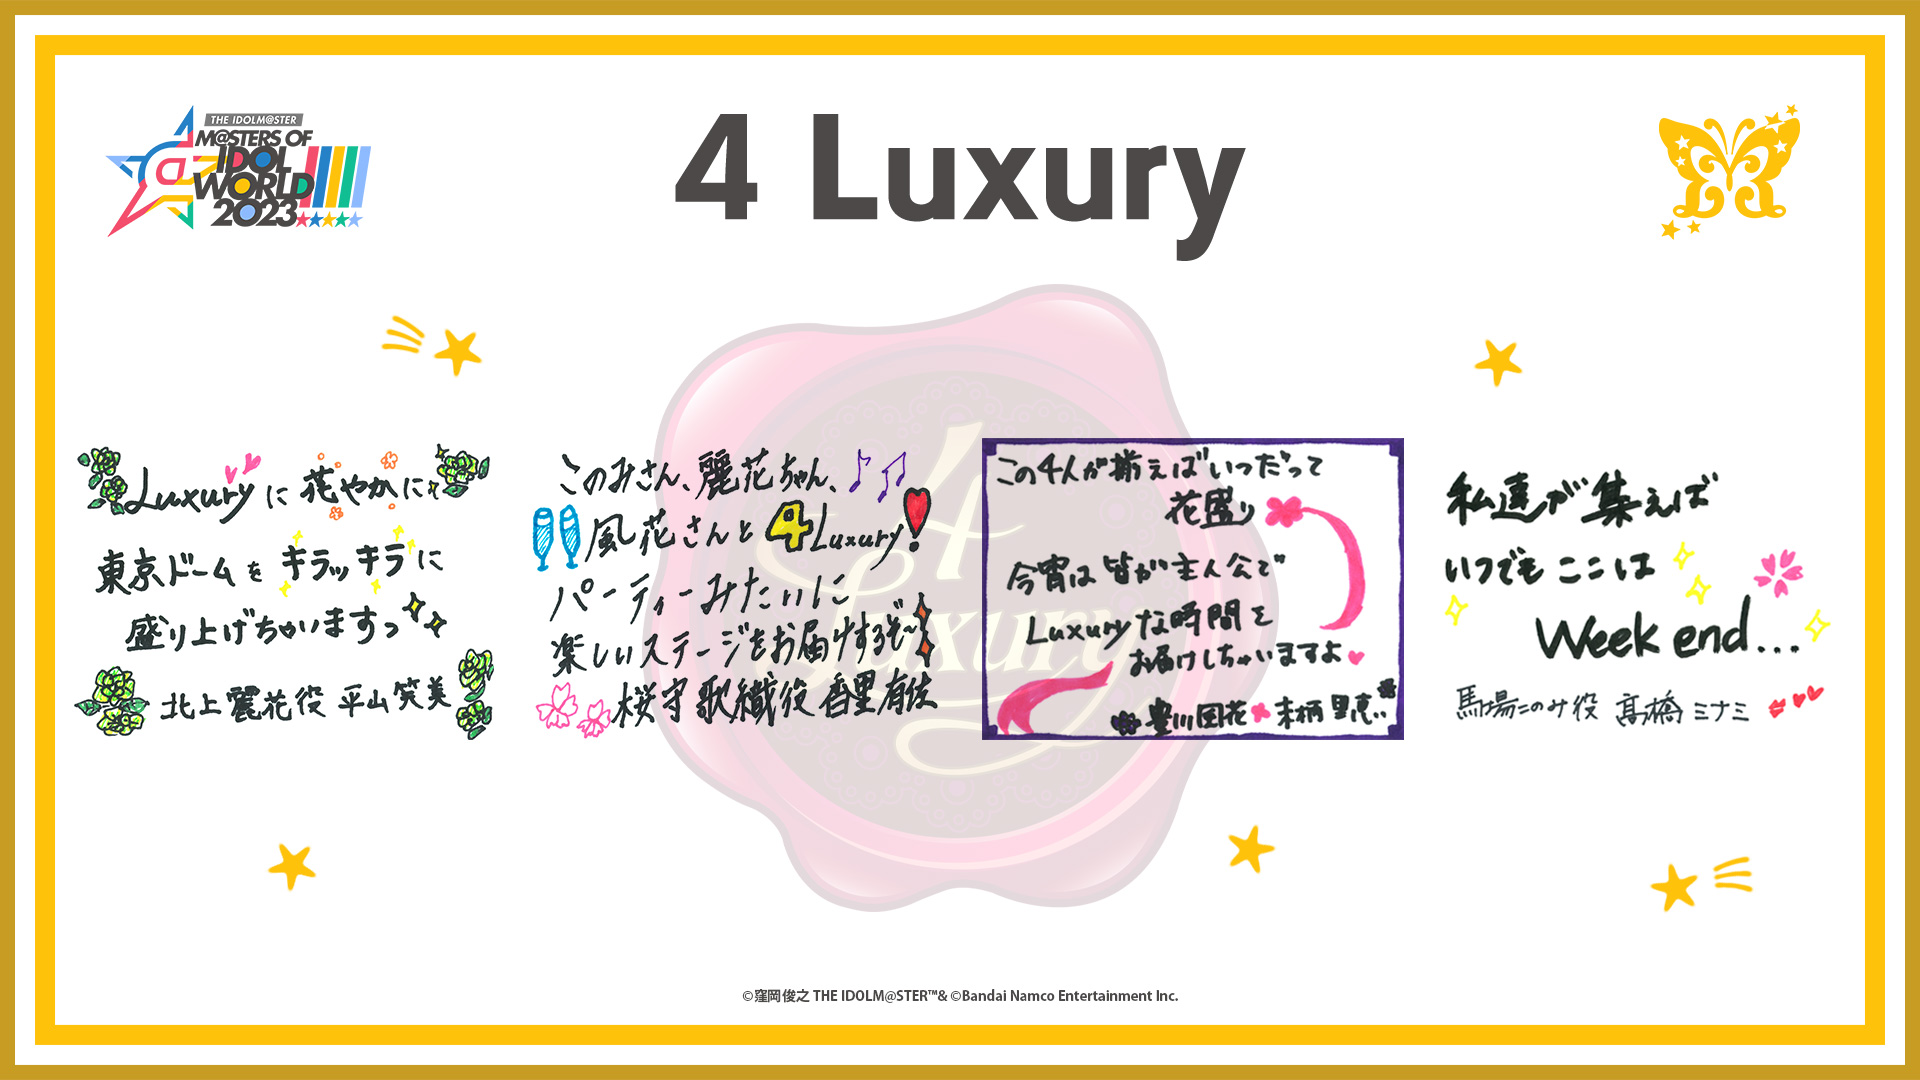 4 Luxury